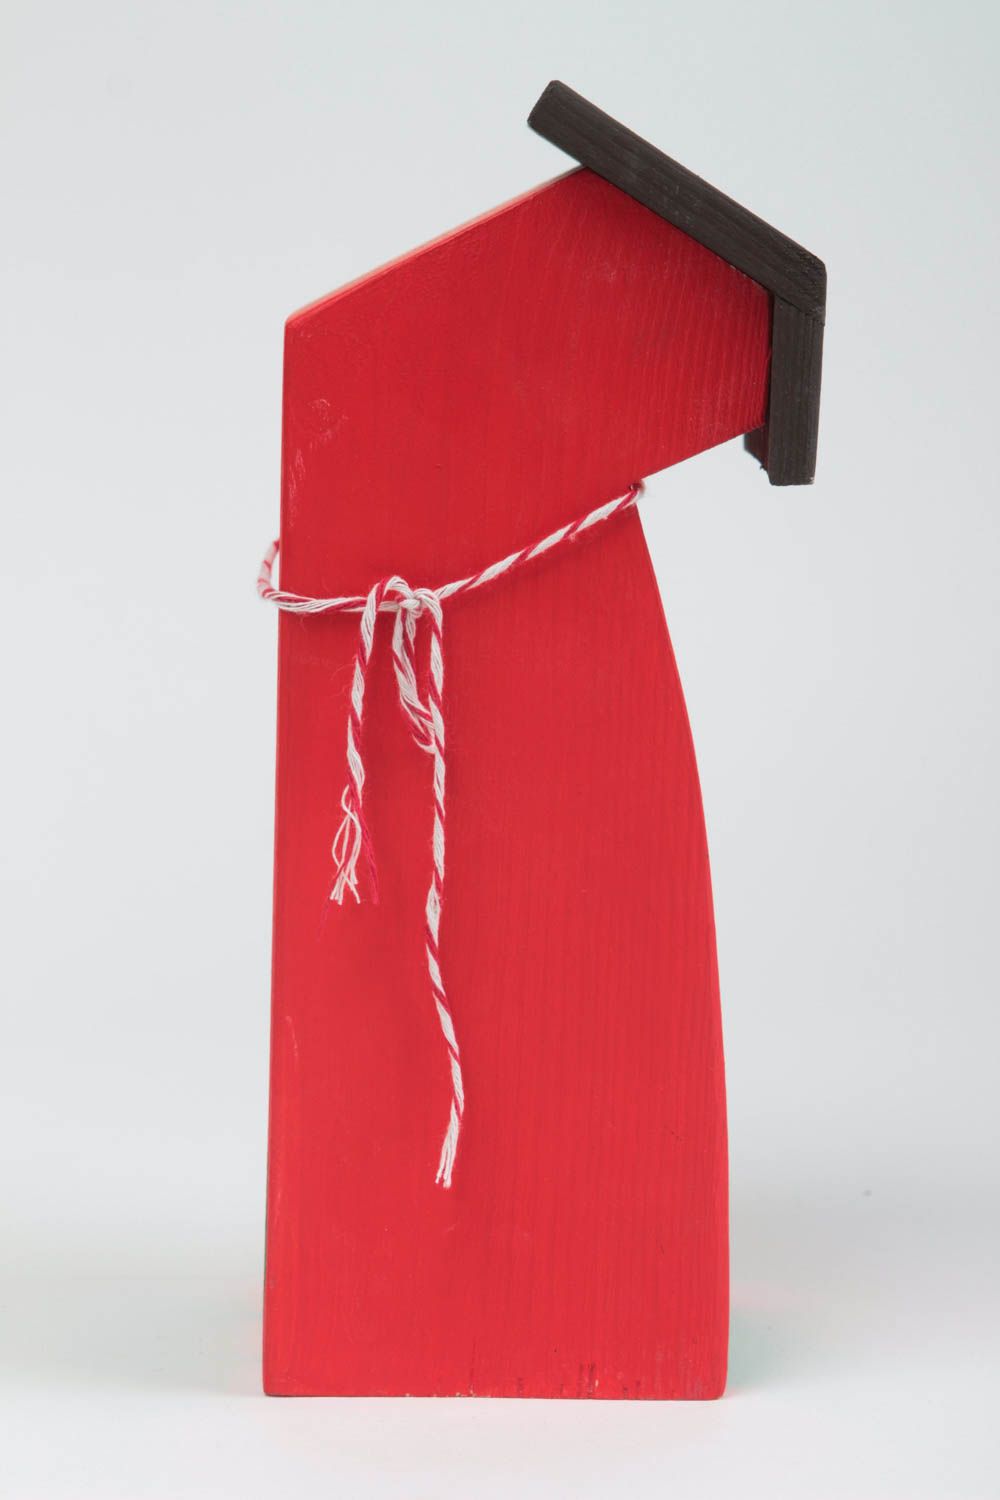 Деревянный домик для декора ручной работы расписанный красками красный фото 3